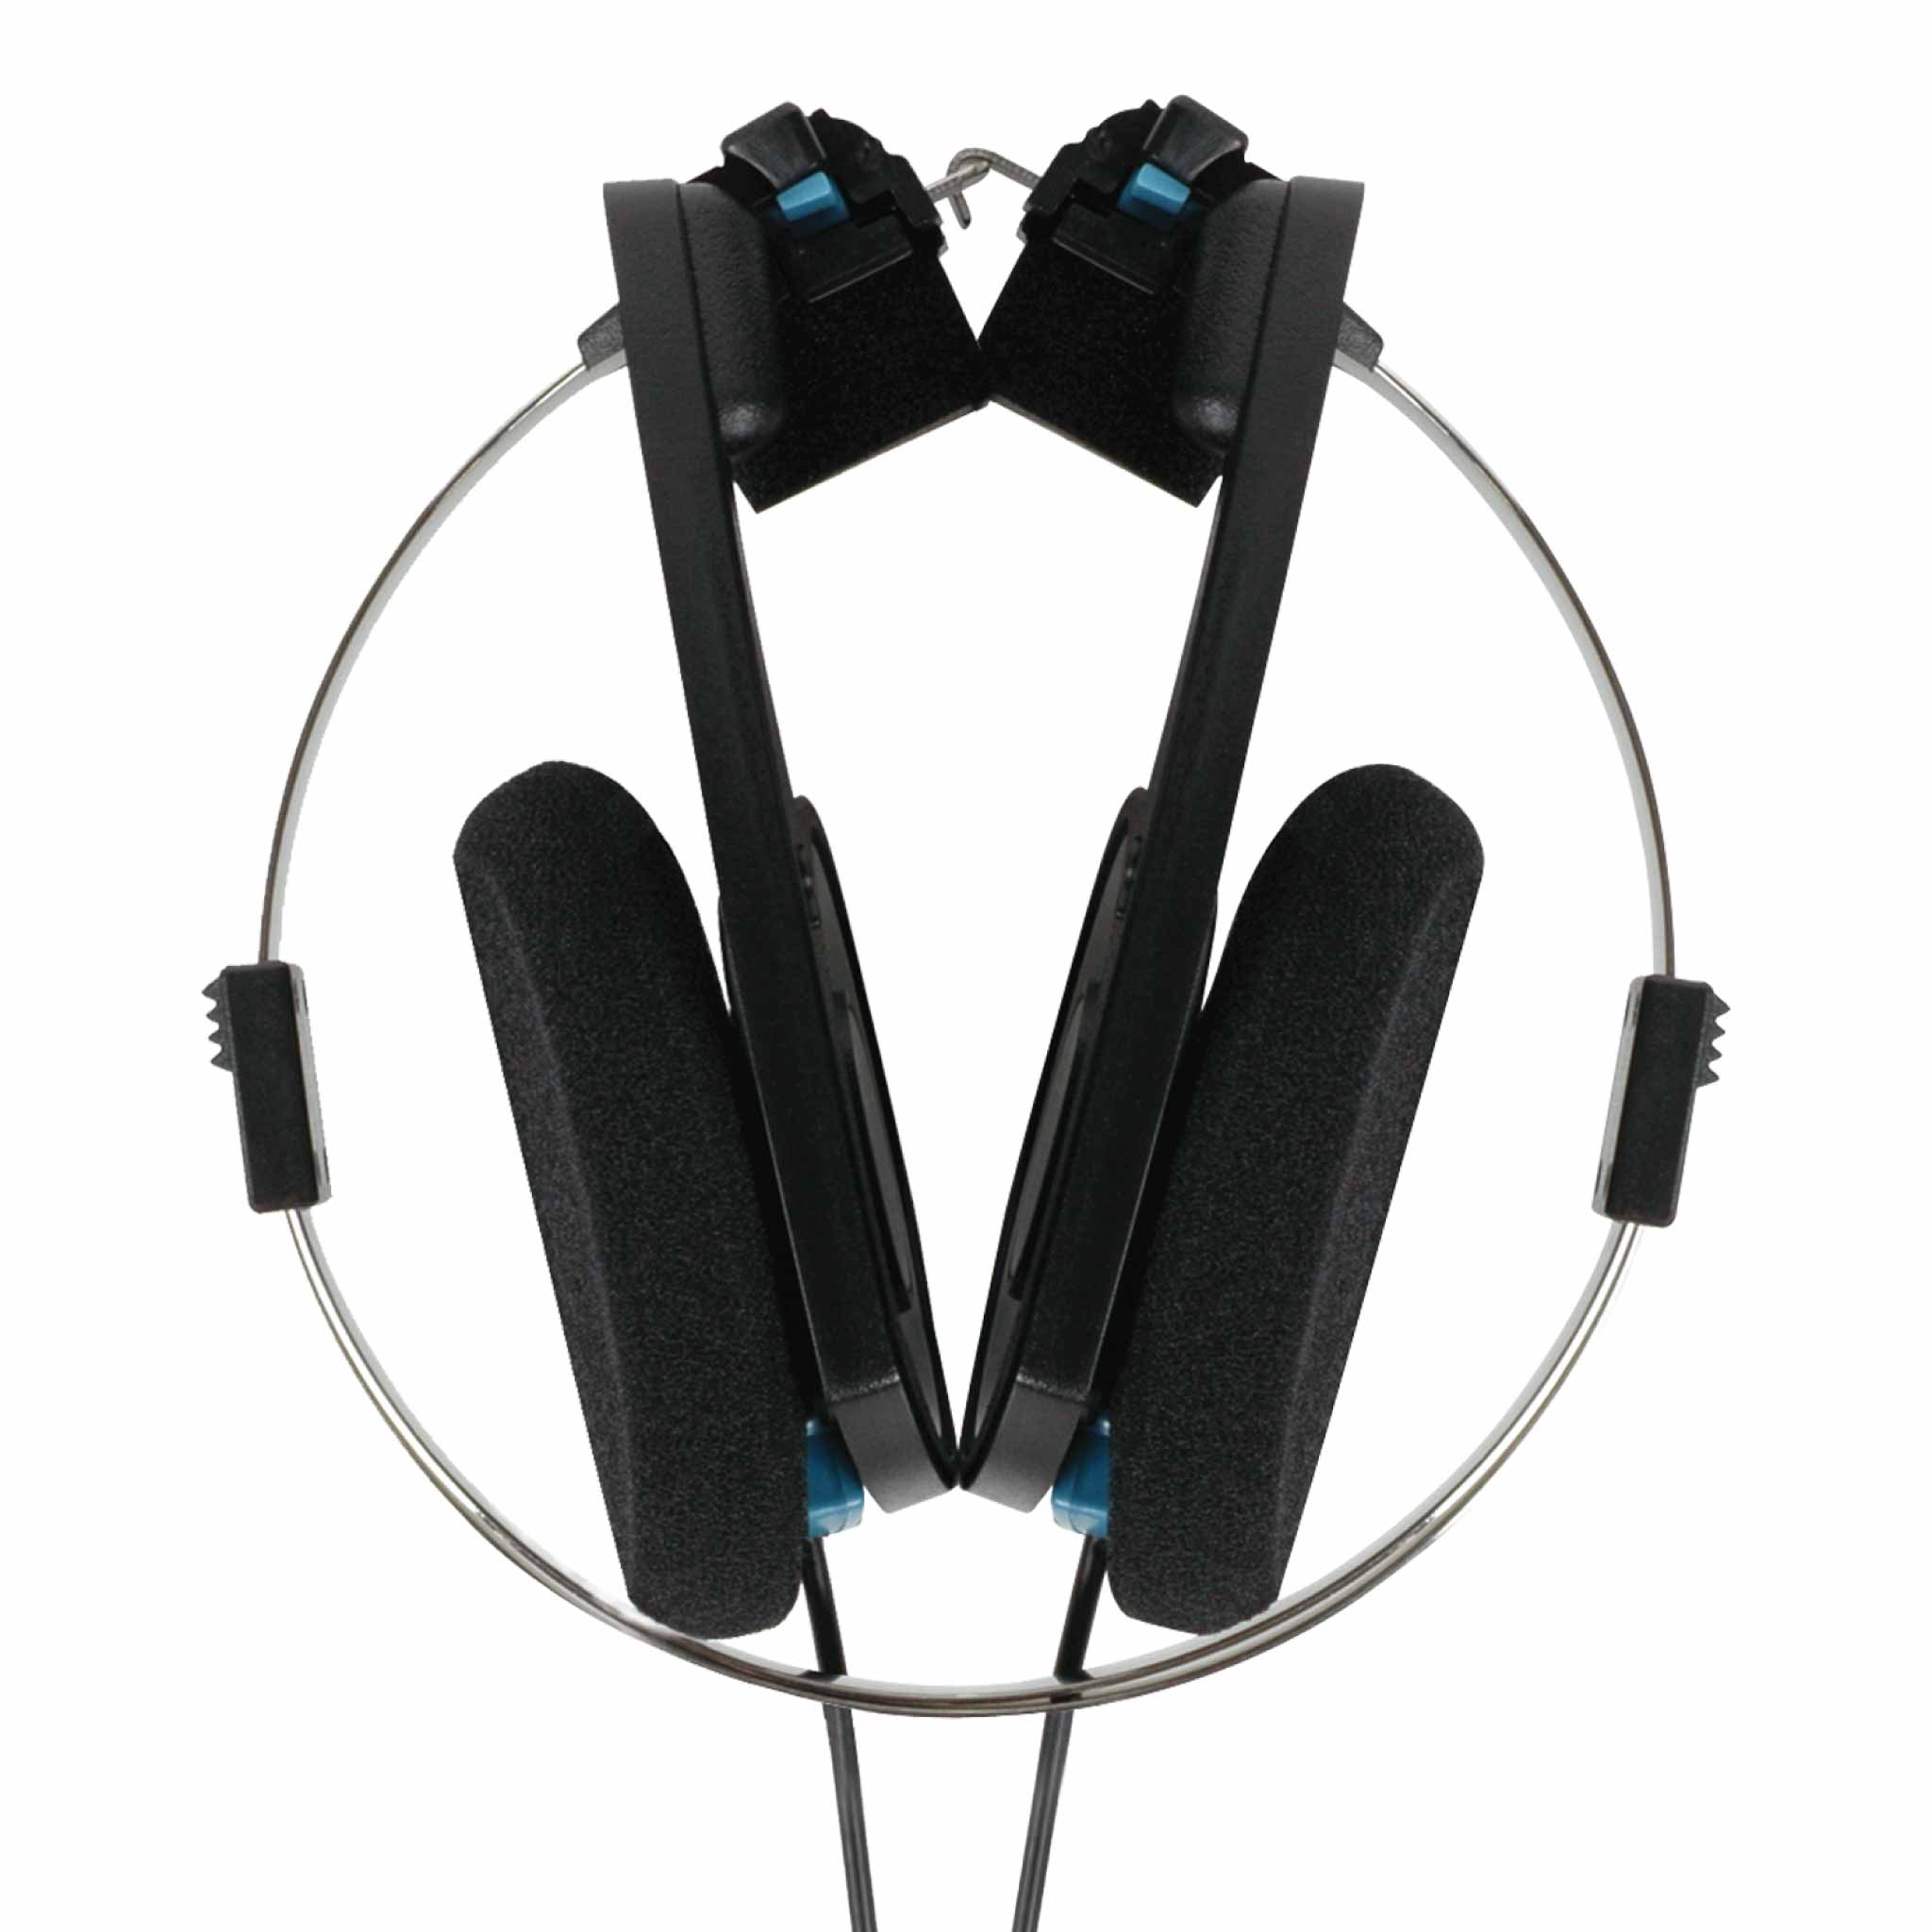 Koss Porta Pro Classic On Ear Headphones Gears For Ears